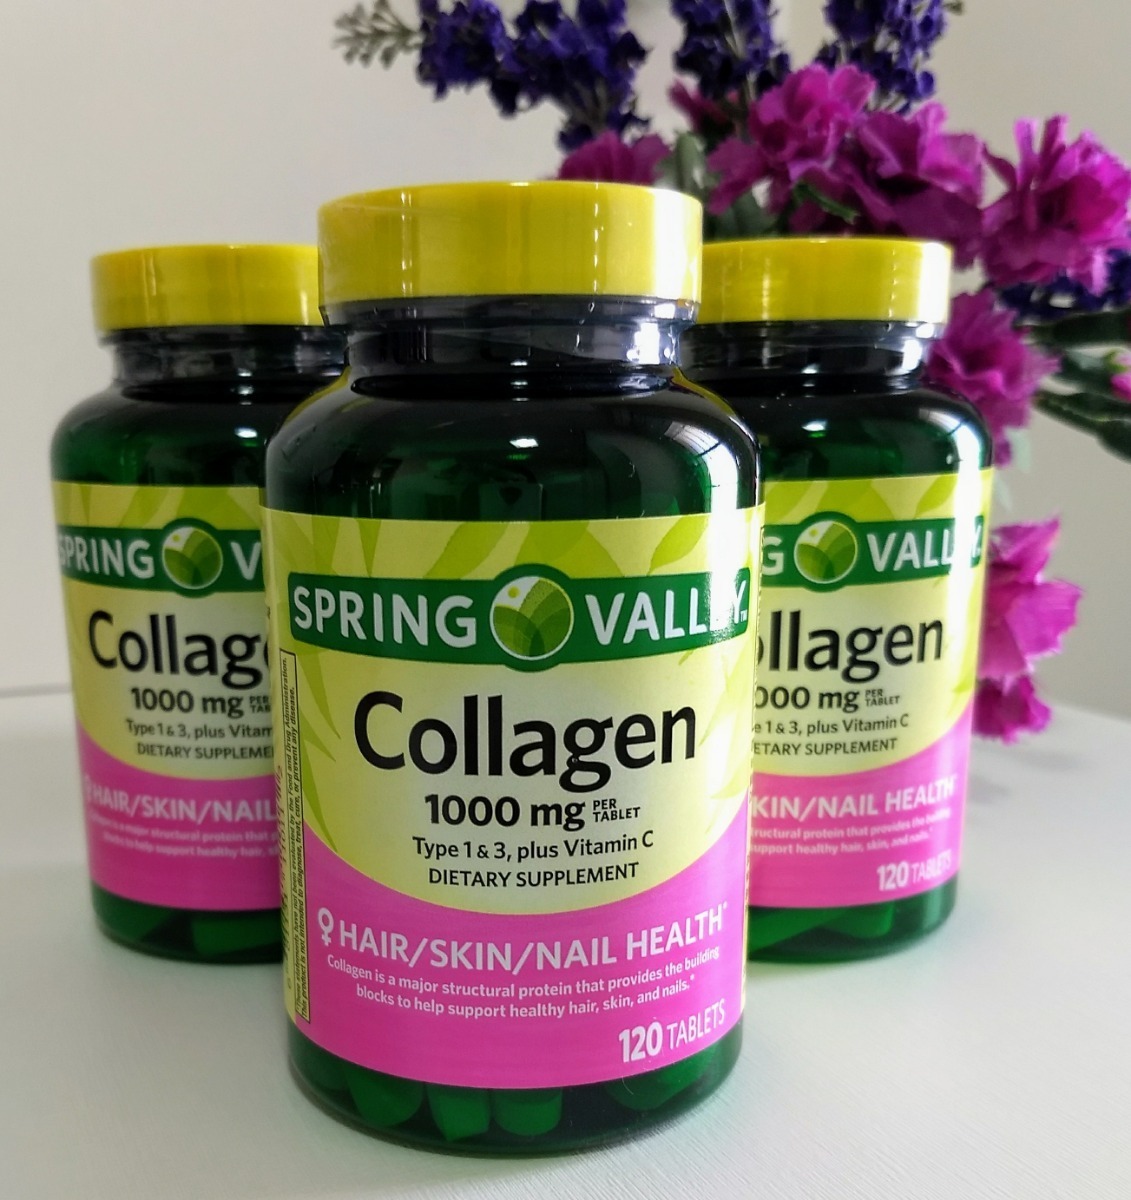 Spring Valley Collagen Resenha: Conheça mais sobre o produto!